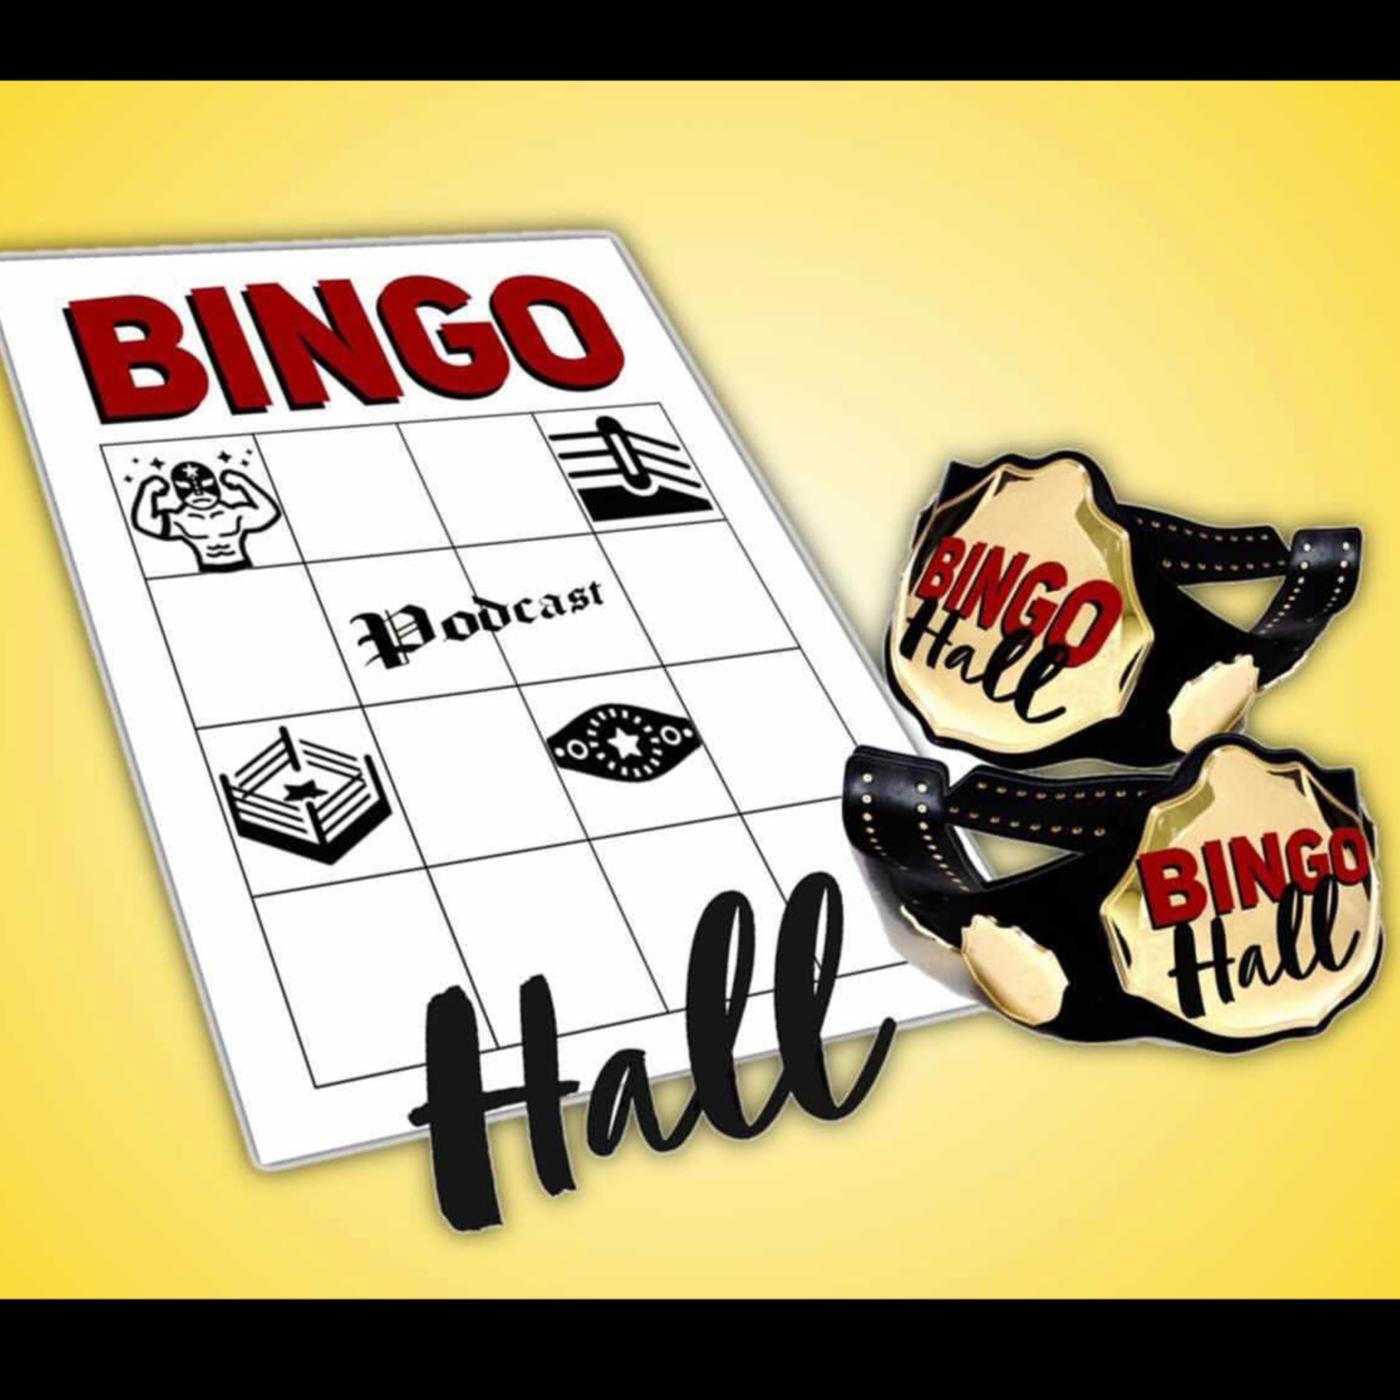 Bingo Hall Podcast